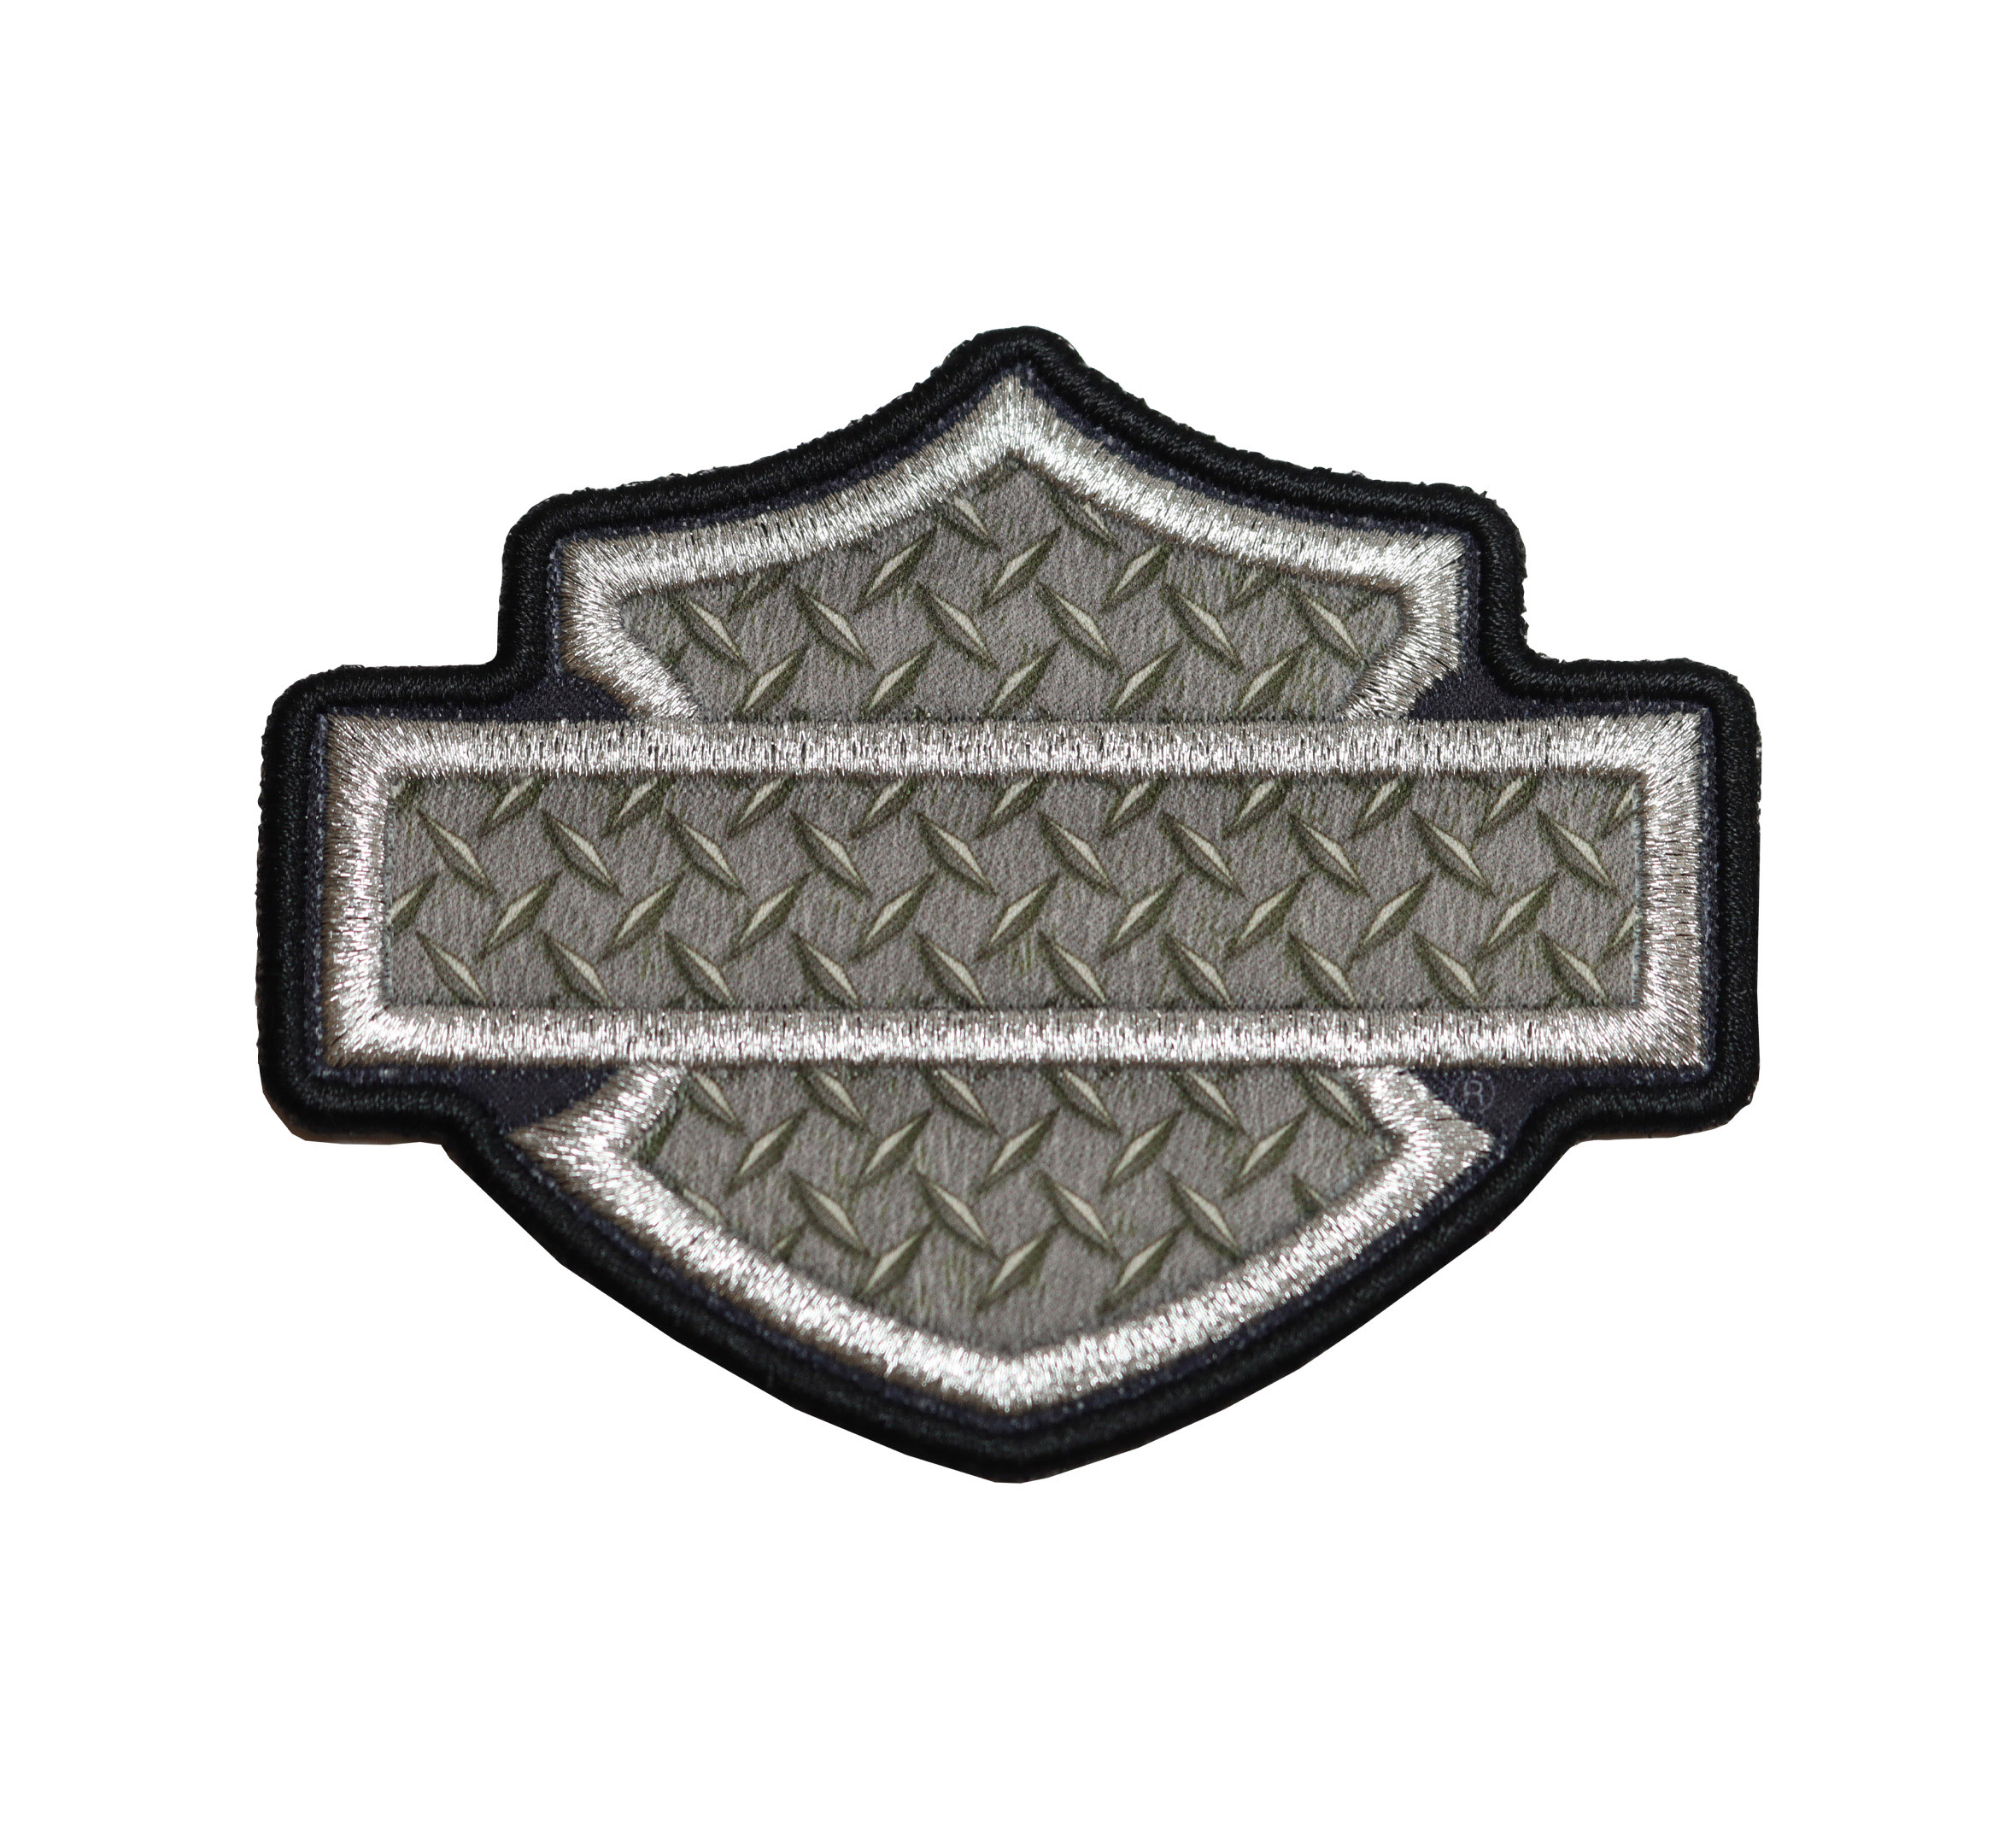 Harley Davidson Badge Reel - Motorcycle Badge Reel - Biker Badge